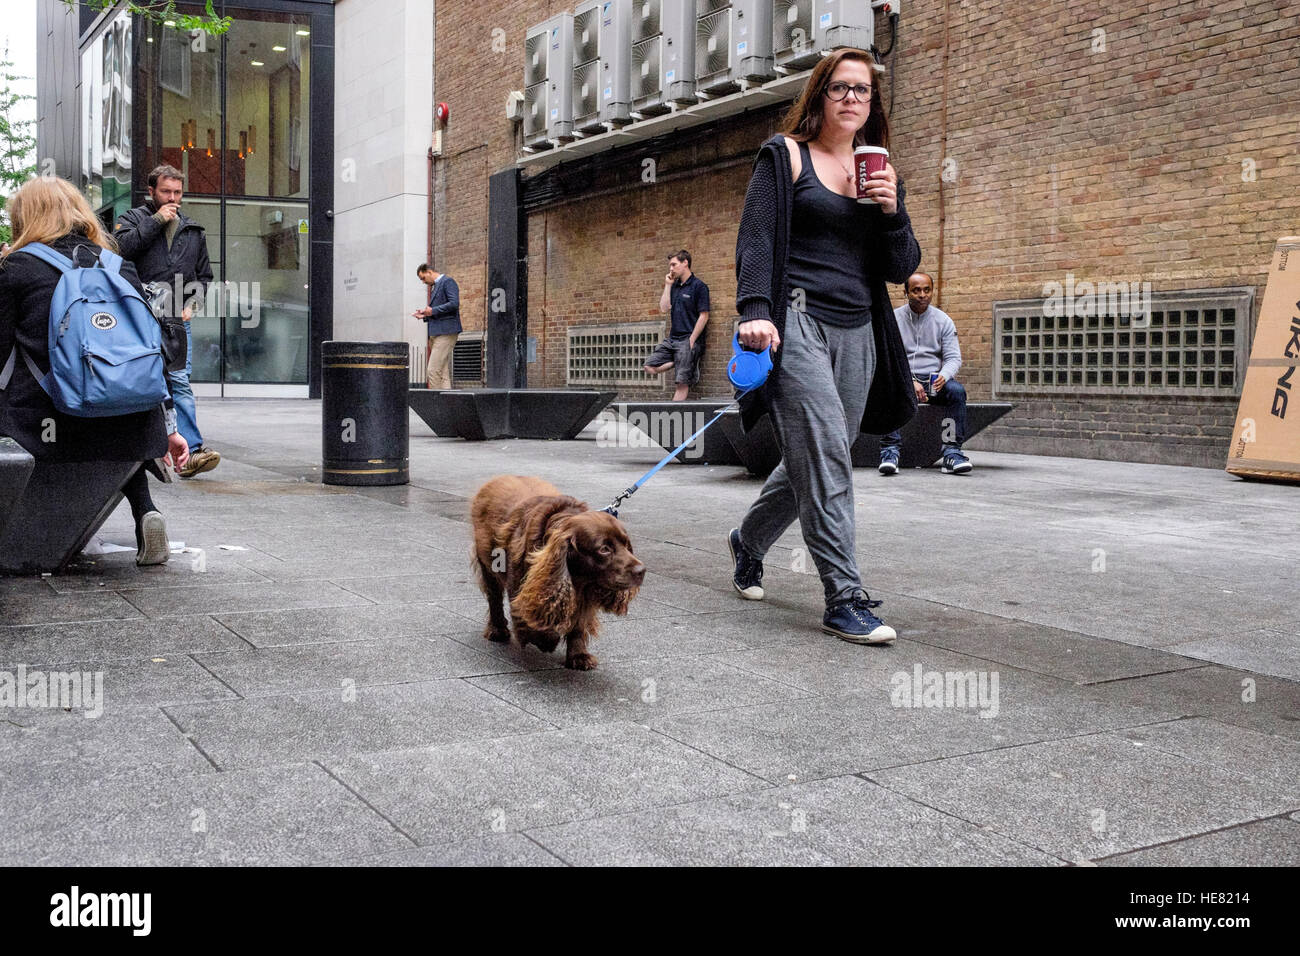 Gode di una donna a prendere il caffè mentre sta prendendo il suo cane per una passeggiata. Foto Stock